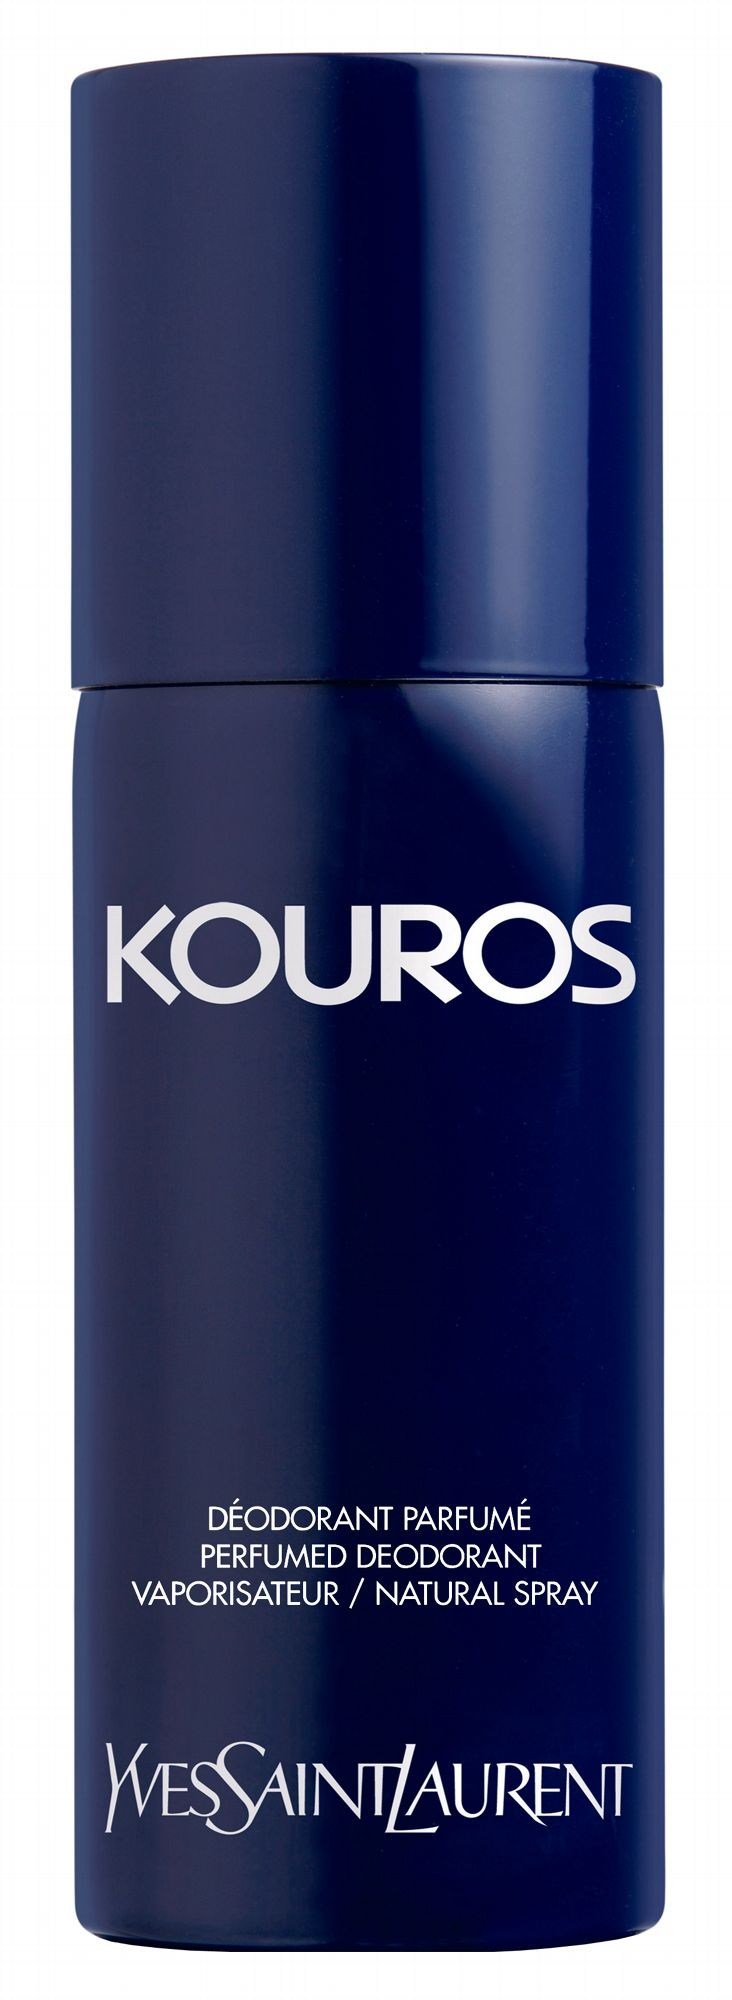 plukke Gooey reductor Kouros by Yves Saint Laurent (Eau de Toilette) » Reviews & Perfume Facts